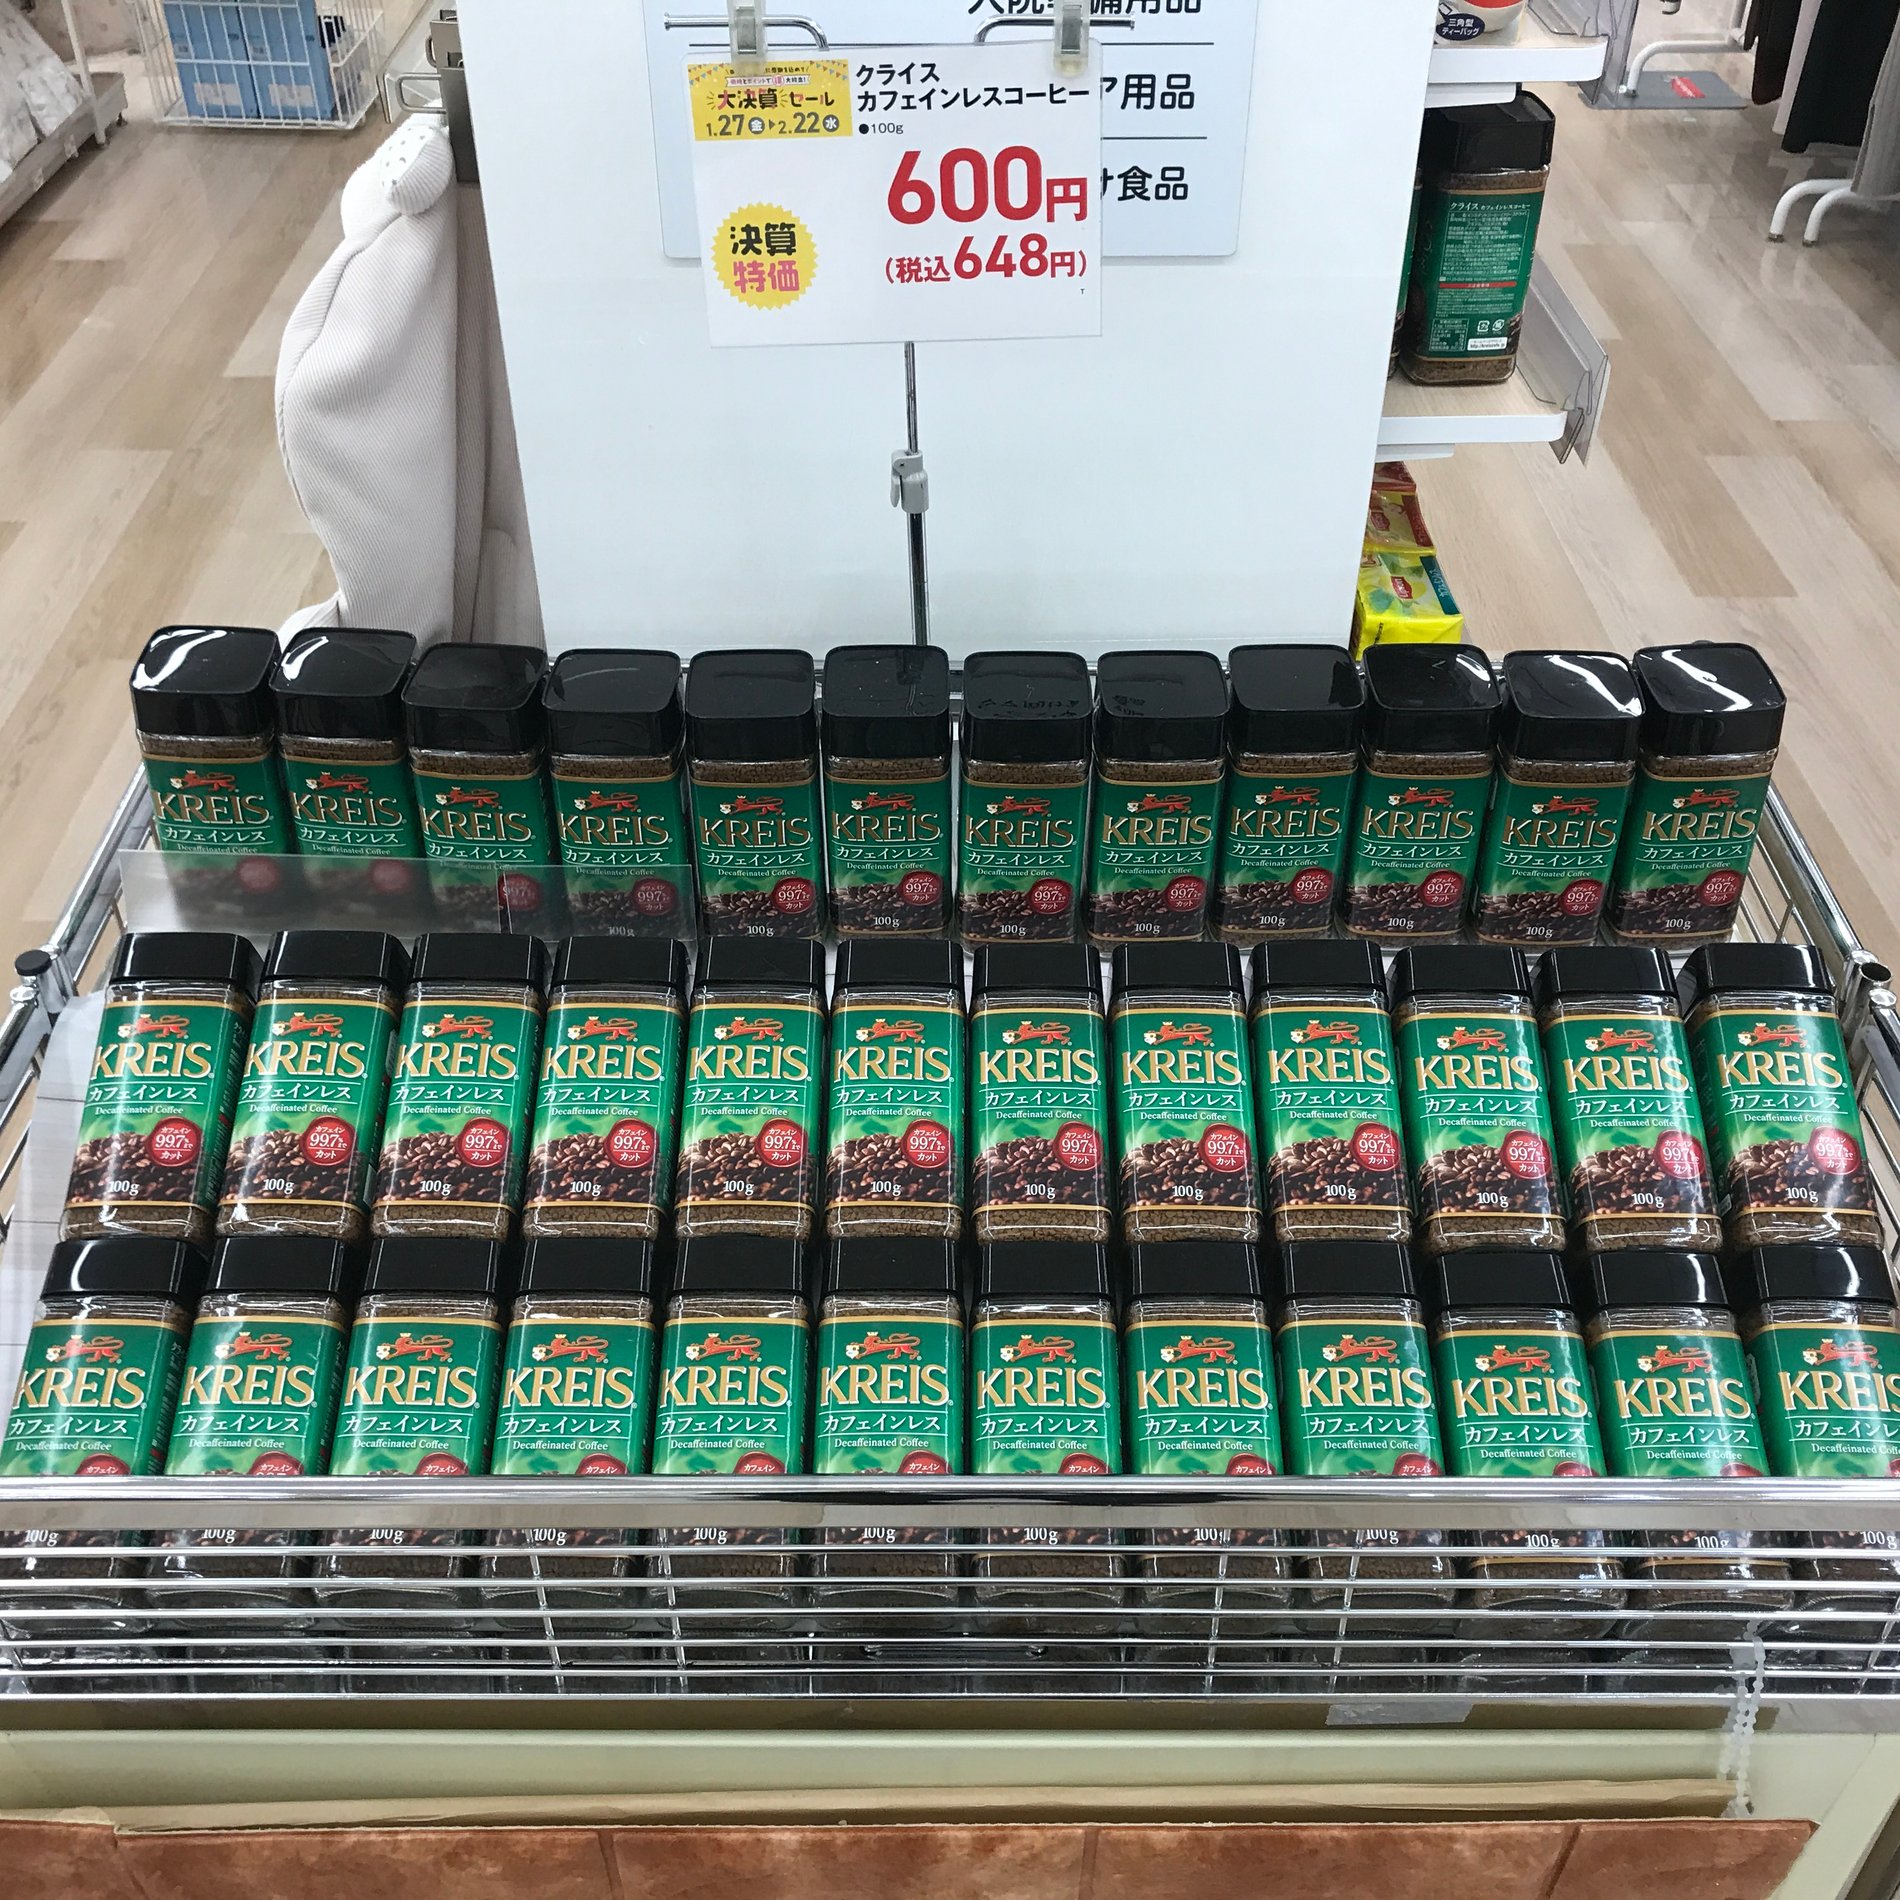 "大決算セール 決算特価"
クライス カフェインレスコーヒー 100g
セール期間中税込648円！